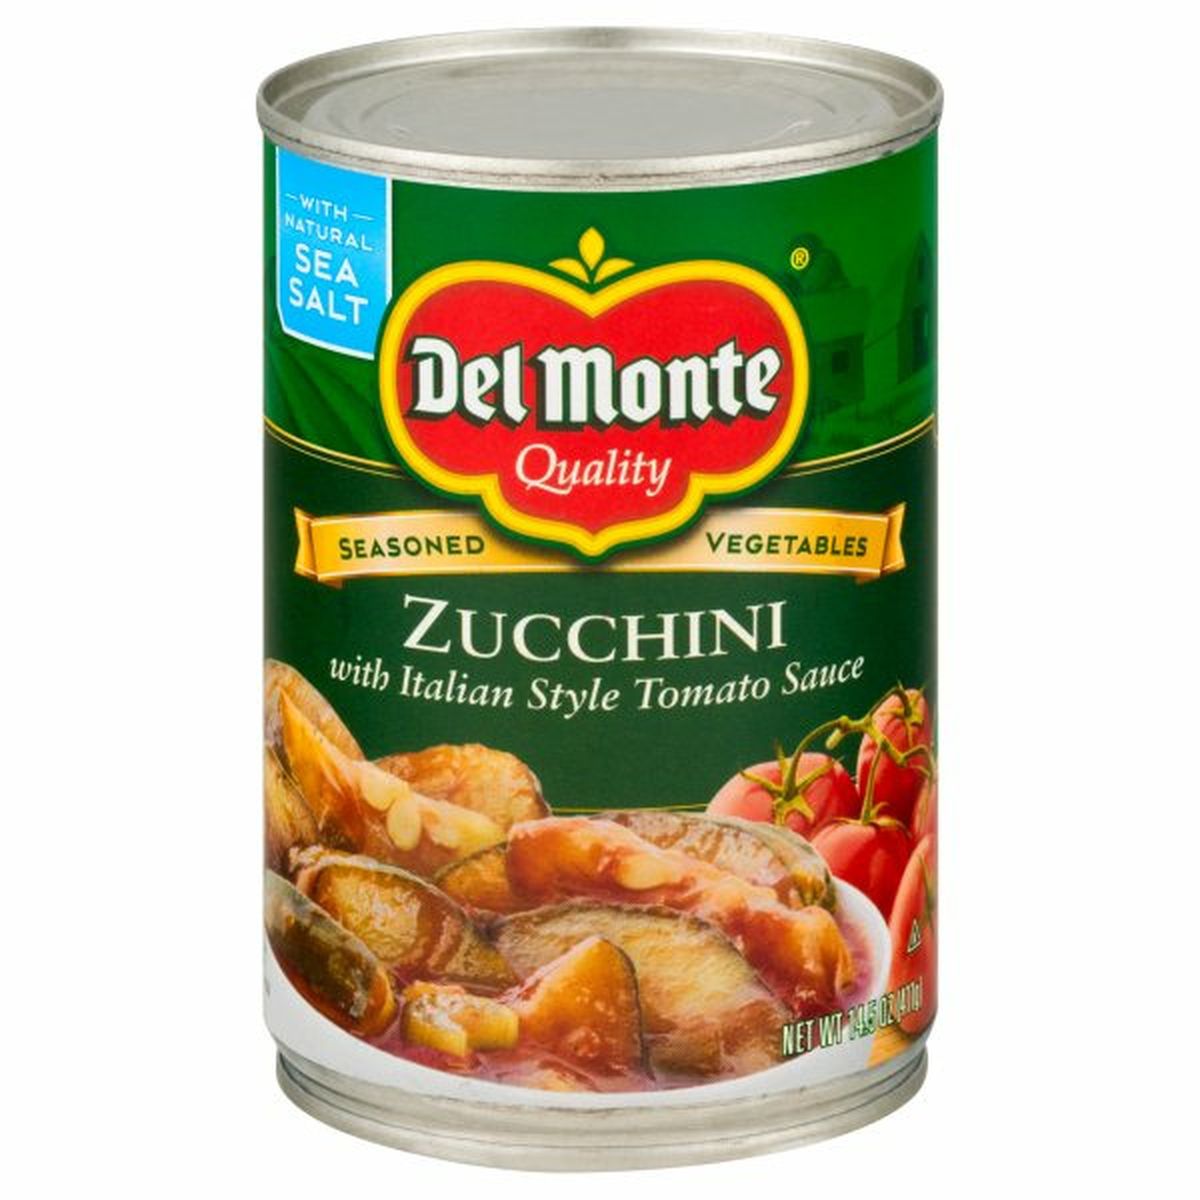 Calories in Del Monte Zucchini with Italian Style Tomato Sauce